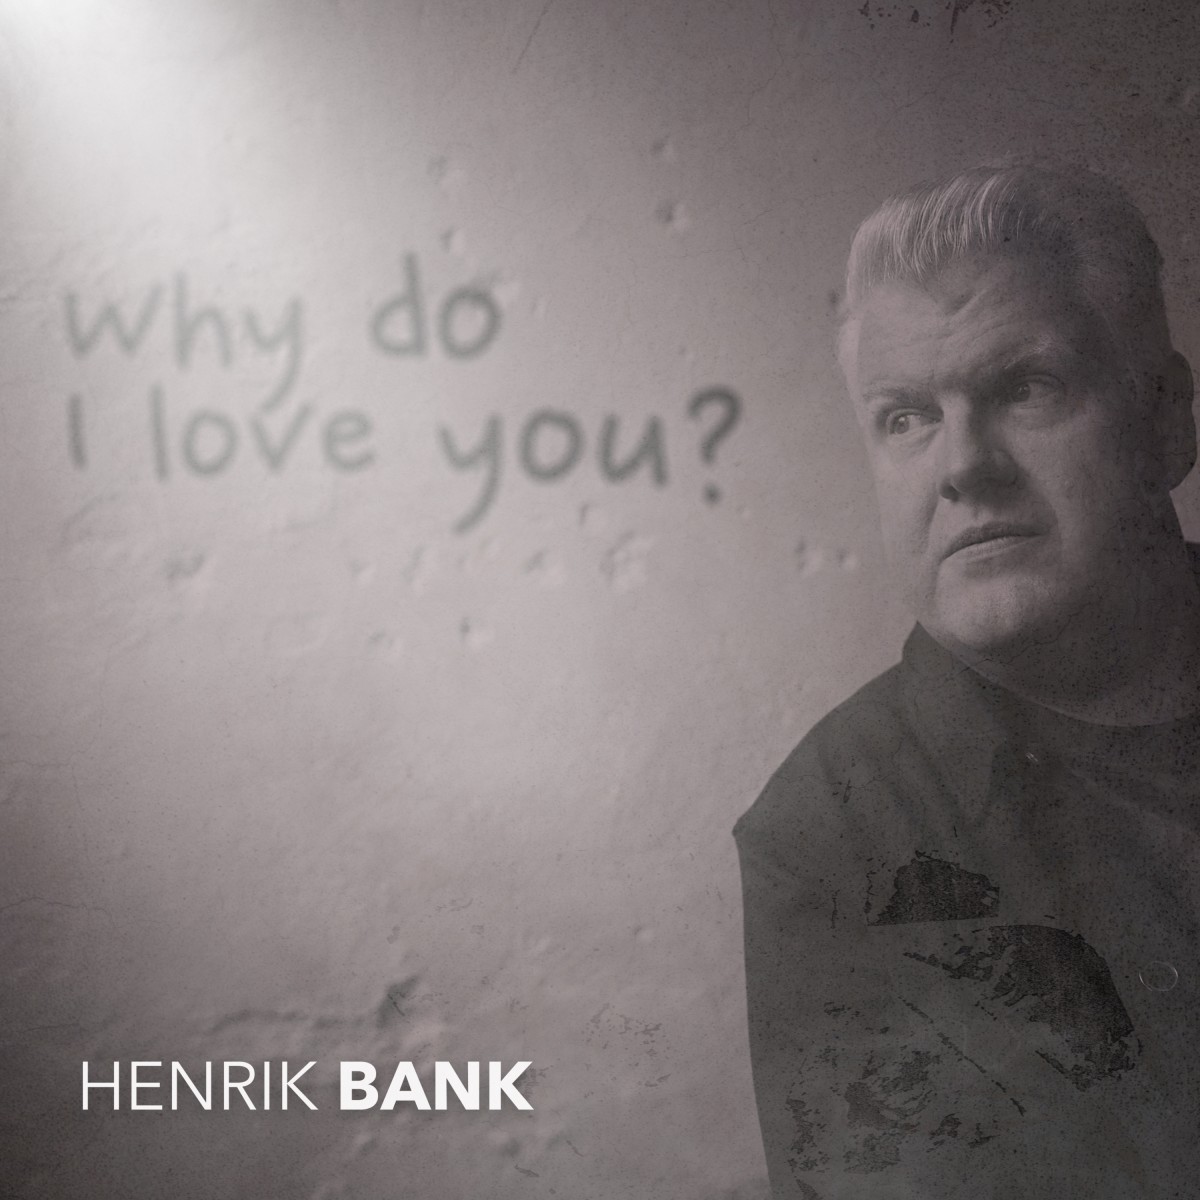 Henrik Bank